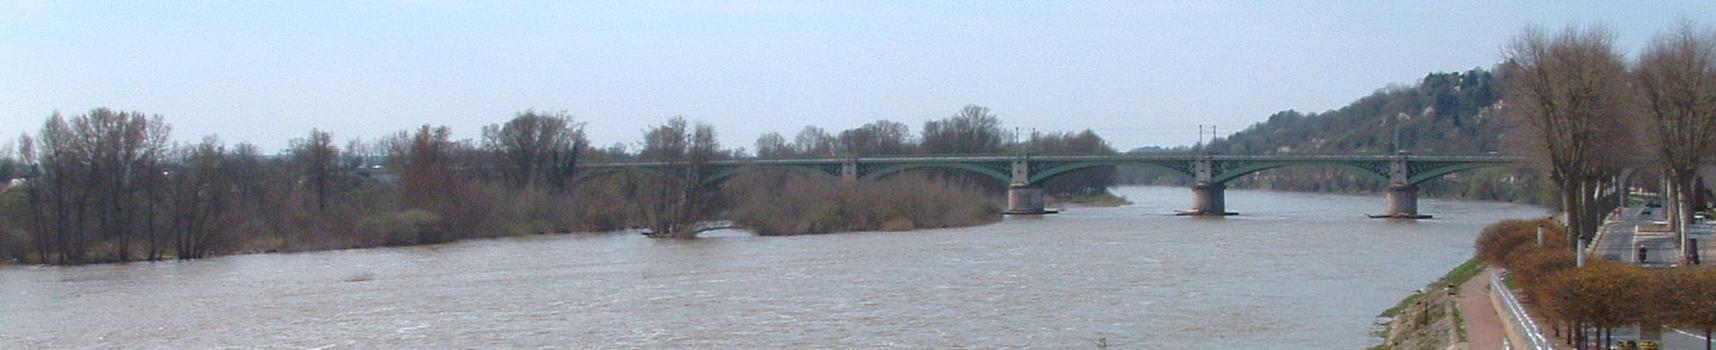 Nevers: Pont du chemin de fer sur la Loire